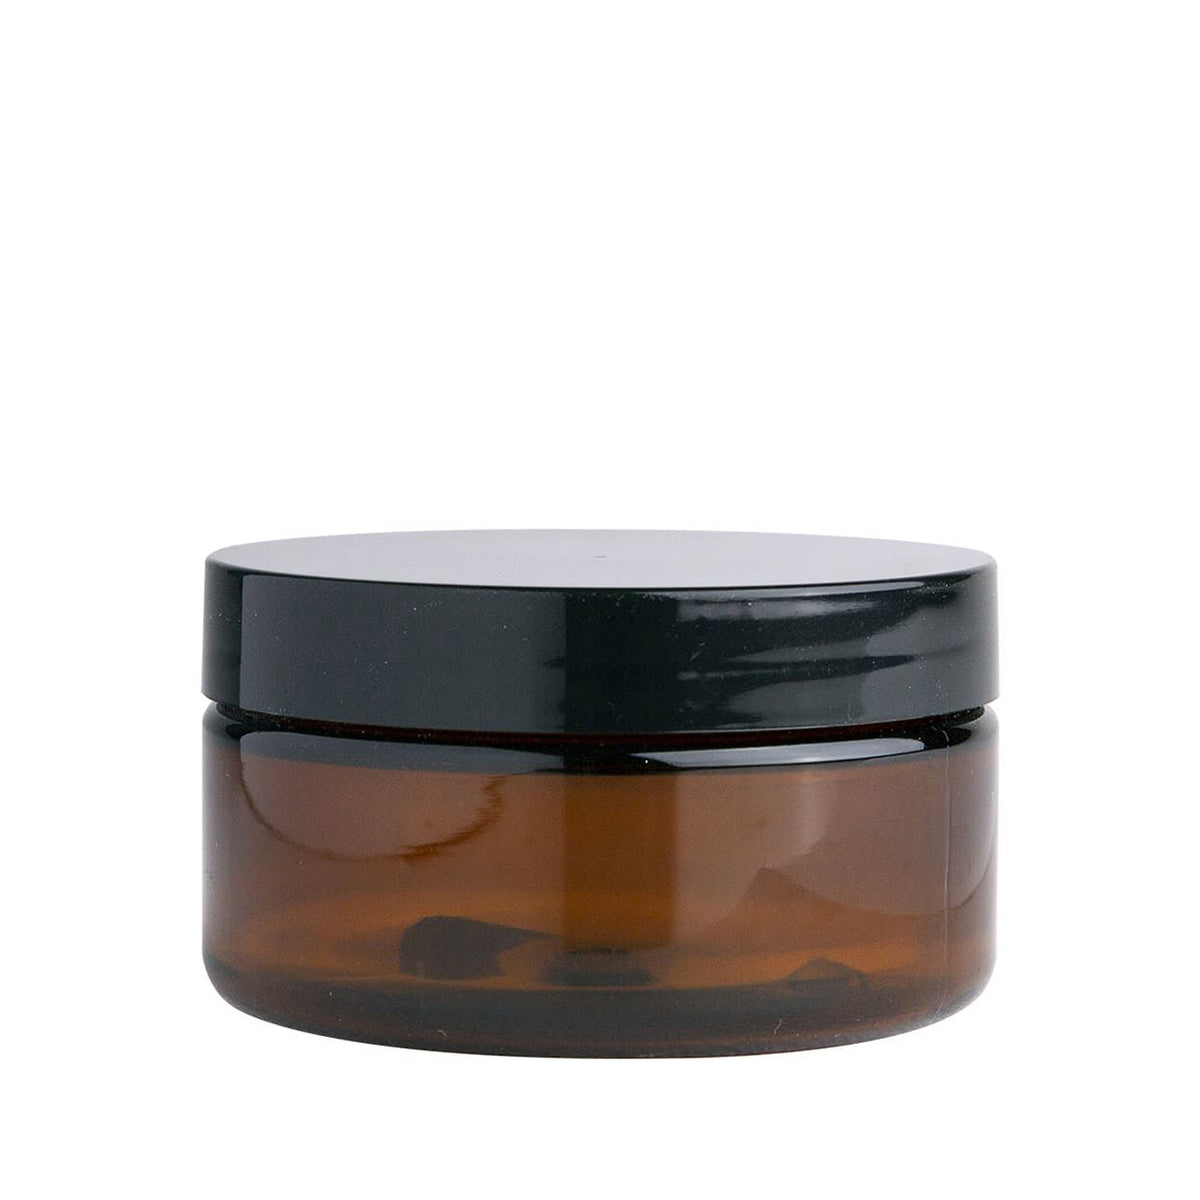 Amber PET jar with cap - 100g